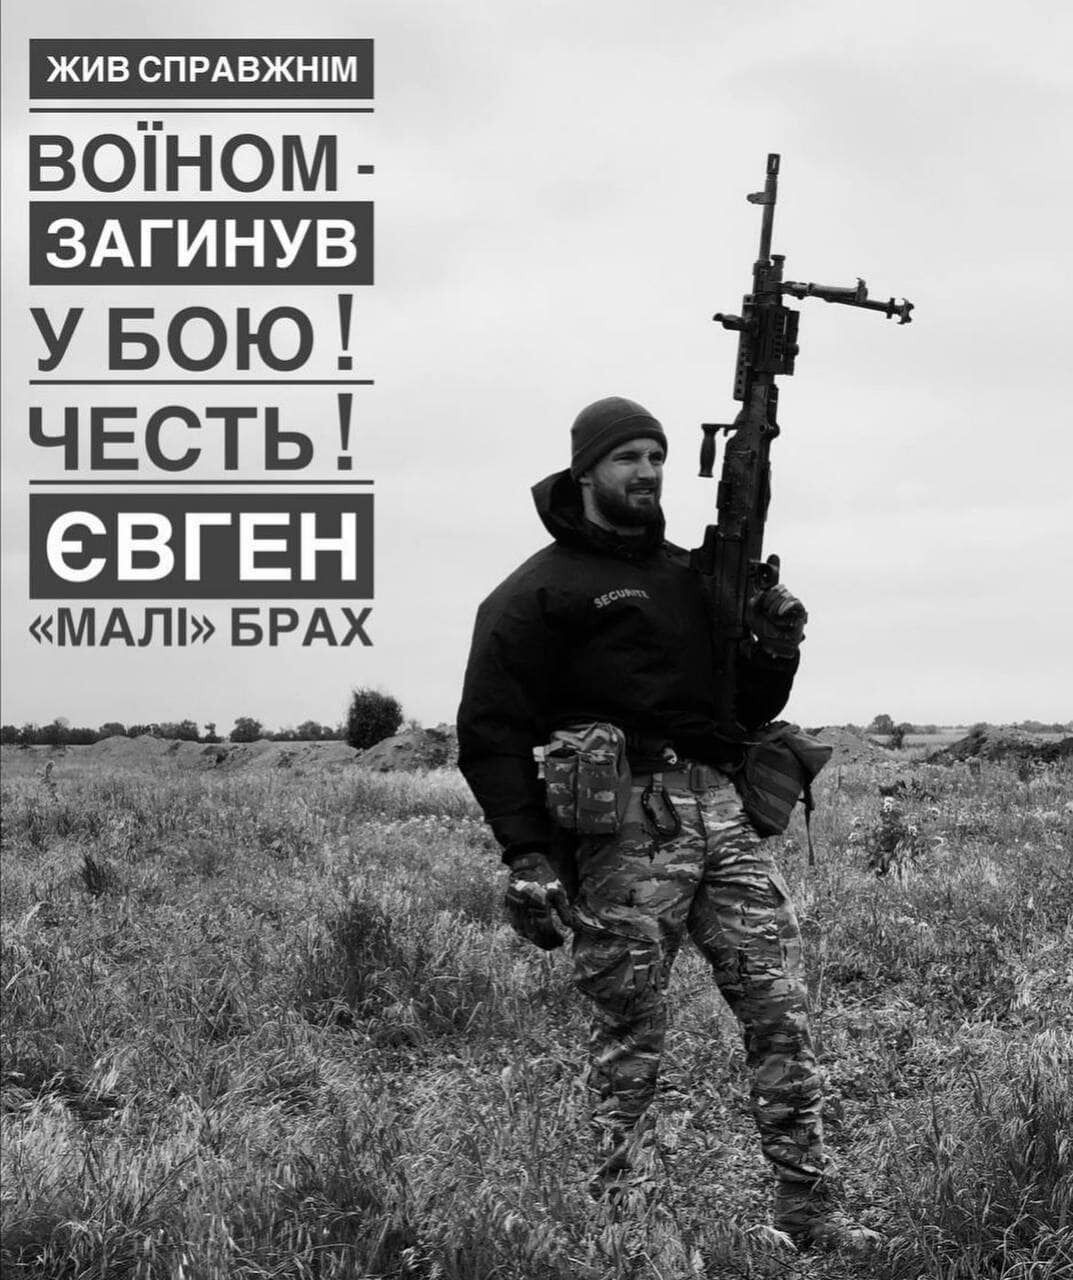 Евгений Брах погиб, защищая Украину